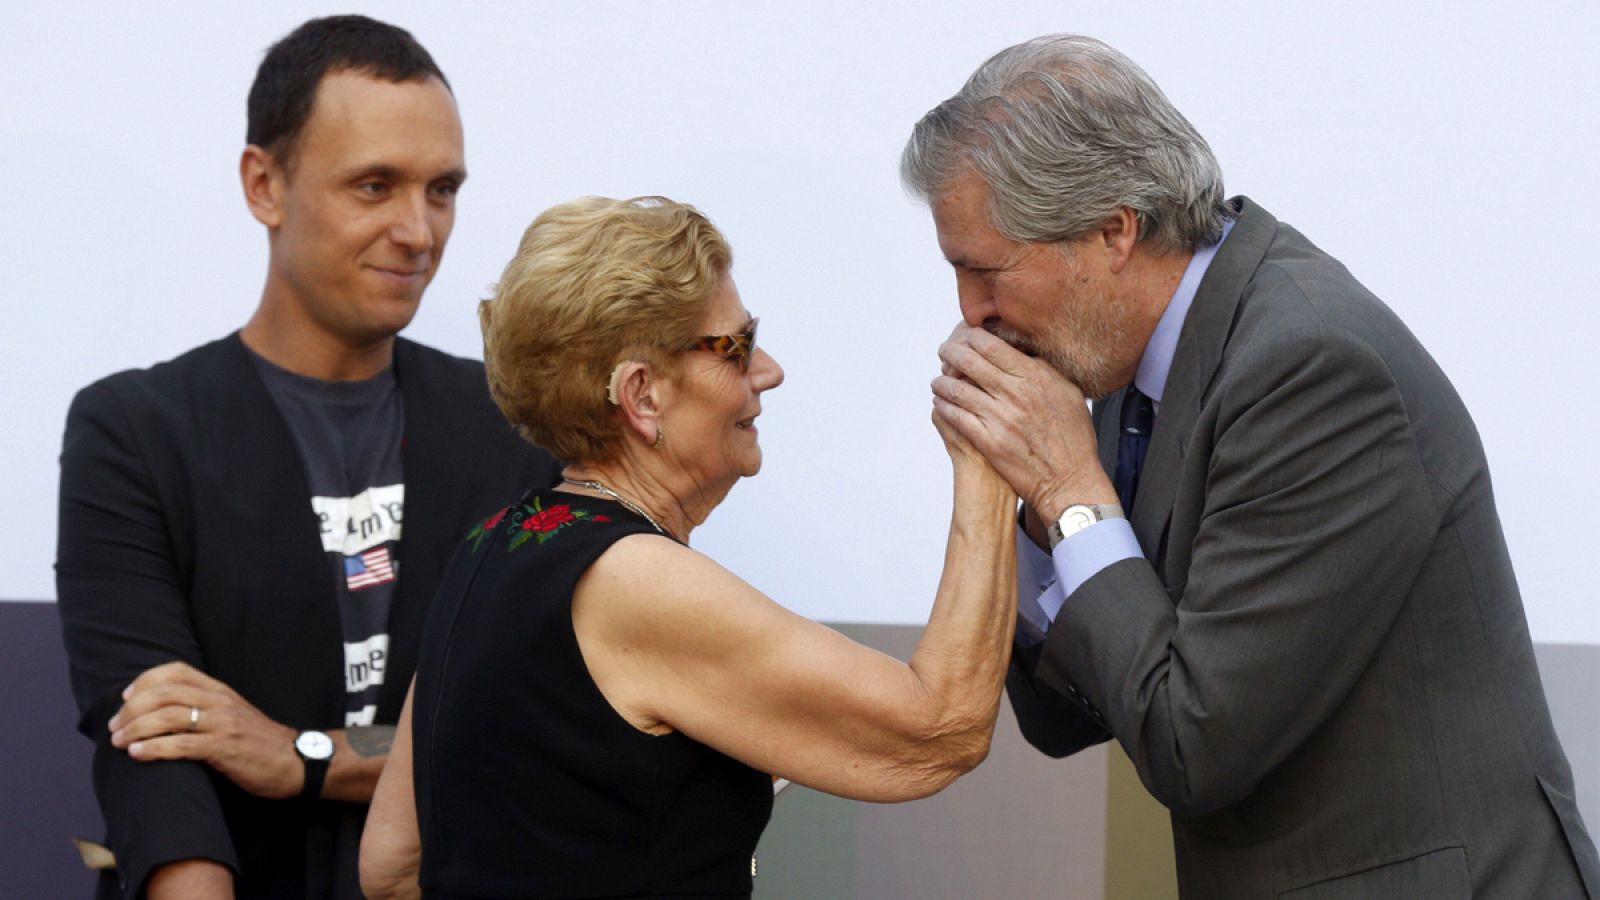 El Ministro de Educación, Iñigo Méndez de Vigo, entrega a la madre del diseñador David Delfín y a su socio, Gorka Postigo, el Premio Nacional de Diseño de Moda, otorgado a David Delfín en noviembre de 2016.